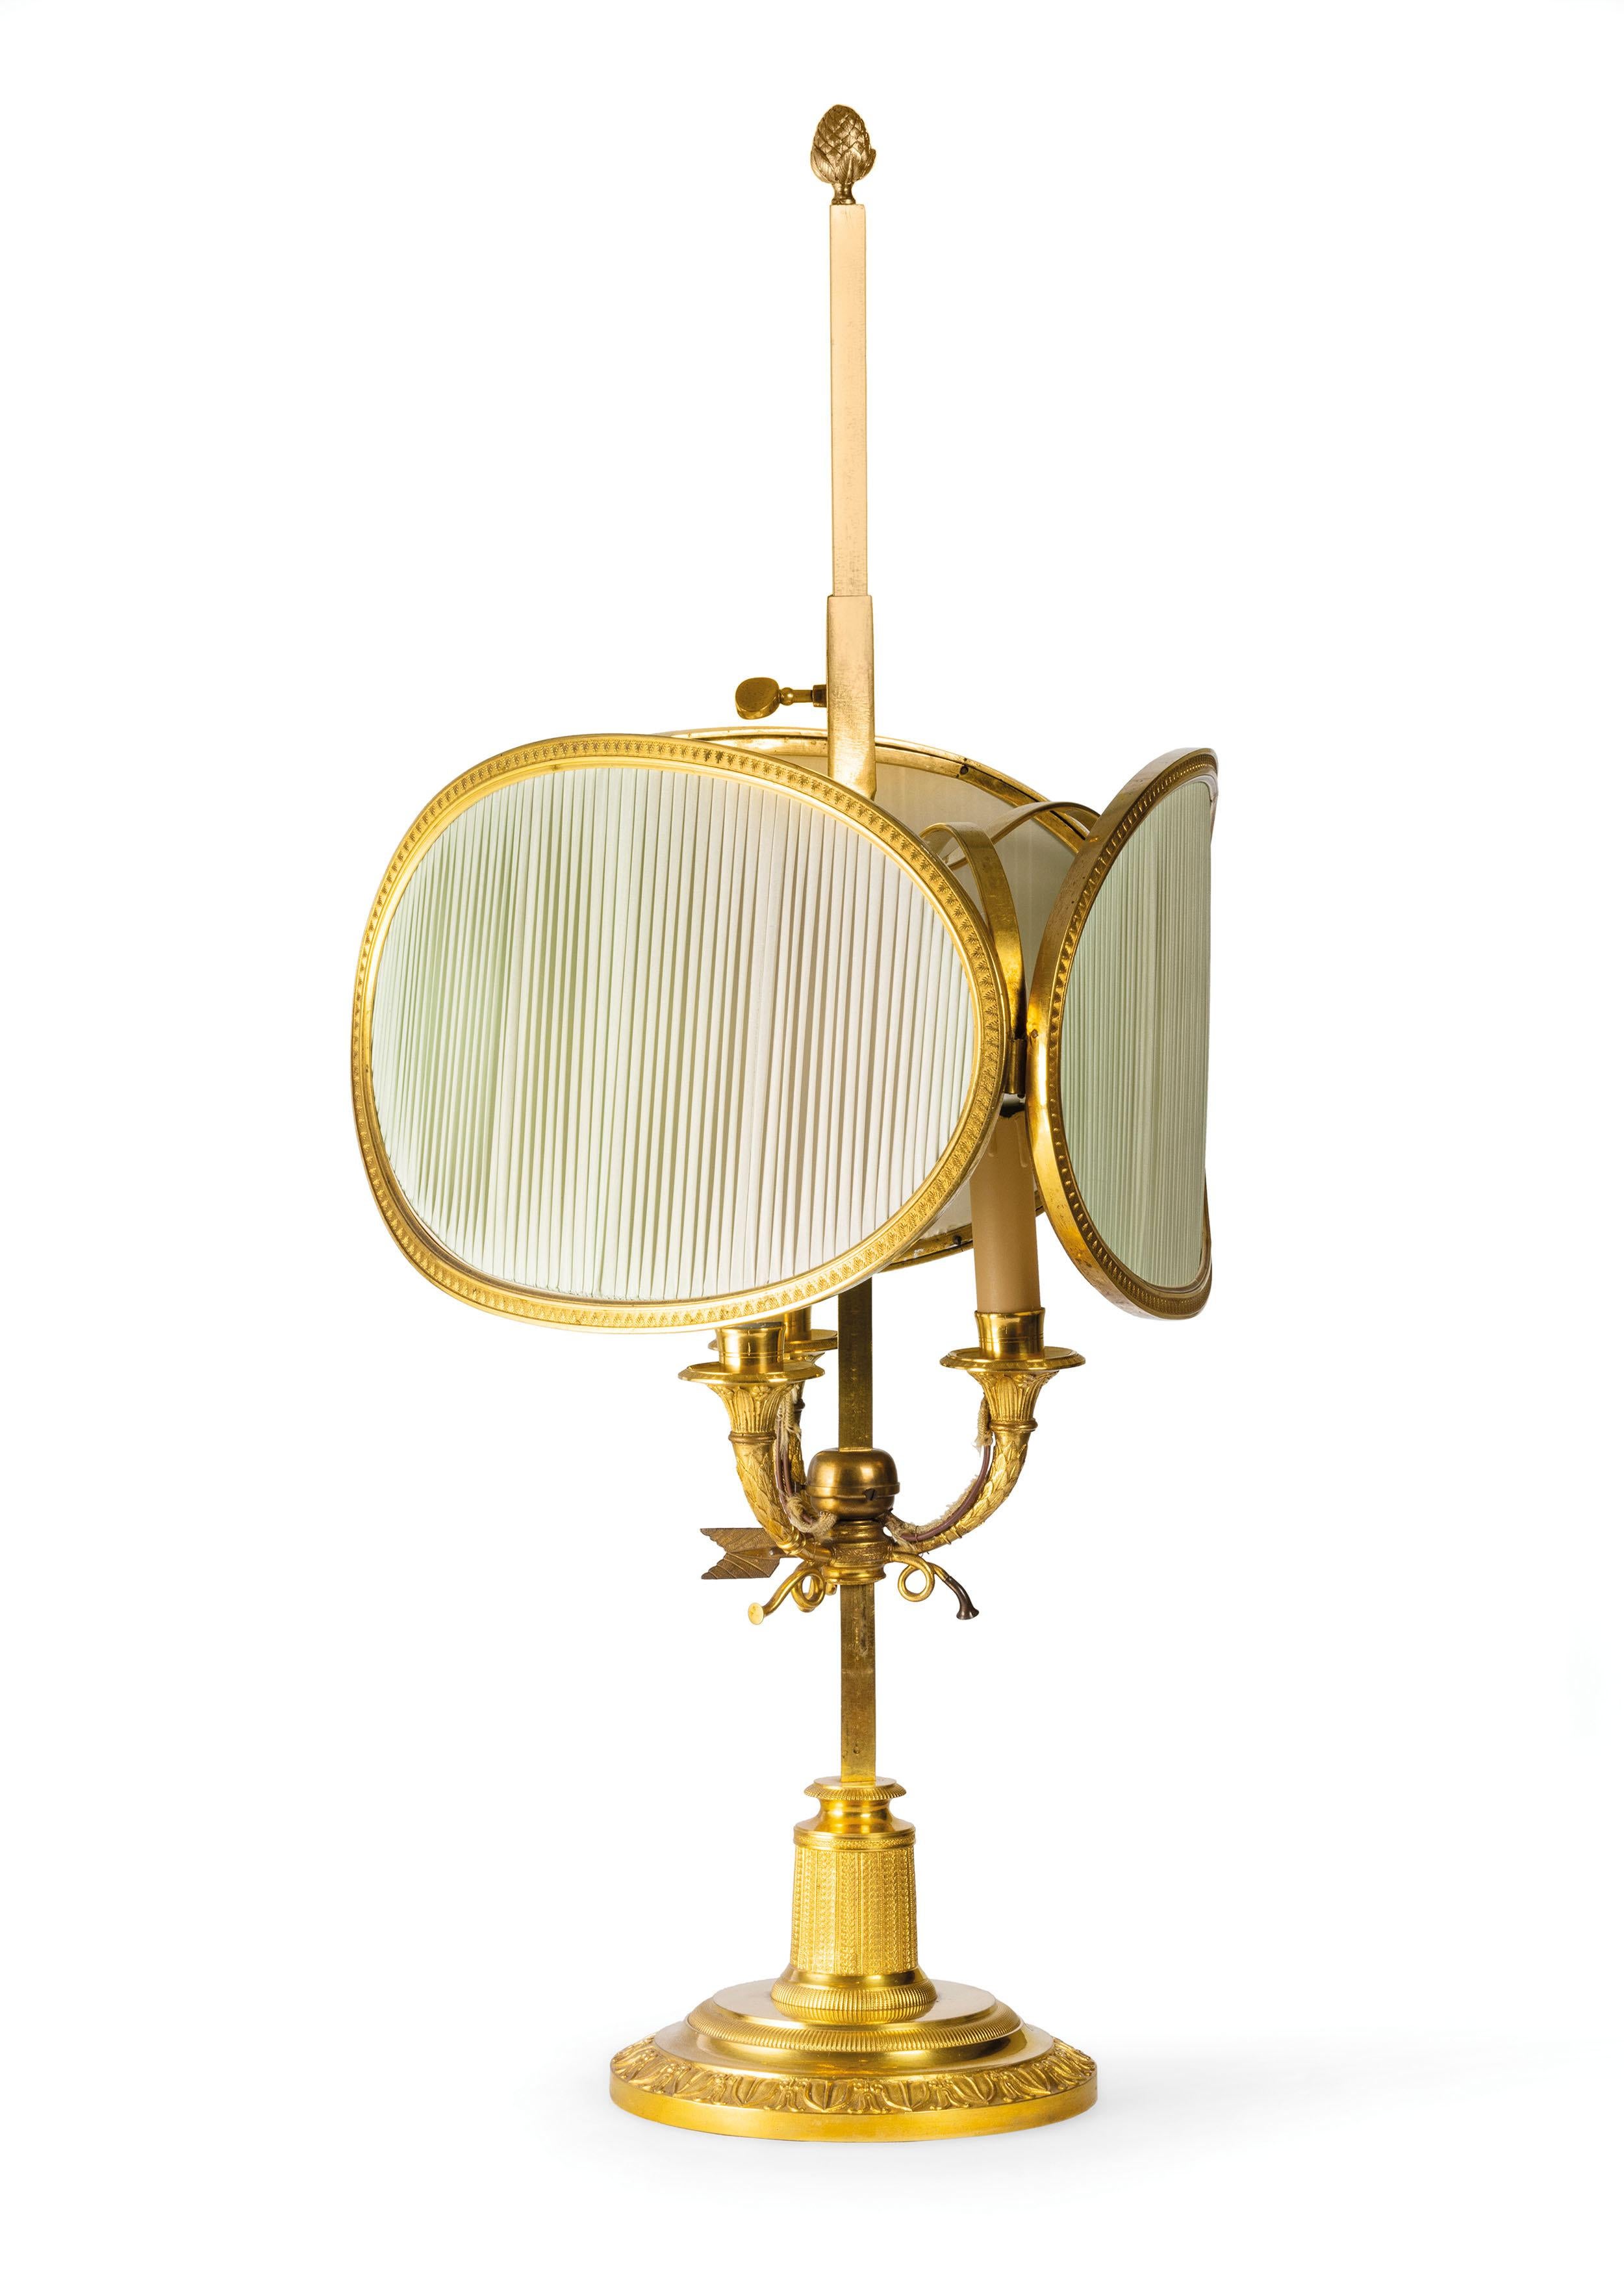 20. Jahrhundert, Französisch vergoldete Bronze Buillotte Lampe 
Diese elegante Tischlampe Modell Buillotte wurde in Frankreich zu Beginn des zwanzigsten Jahrhunderts, der klassischen Geschmack mit dekorativen Elementen durch die Stile von Louis XVI